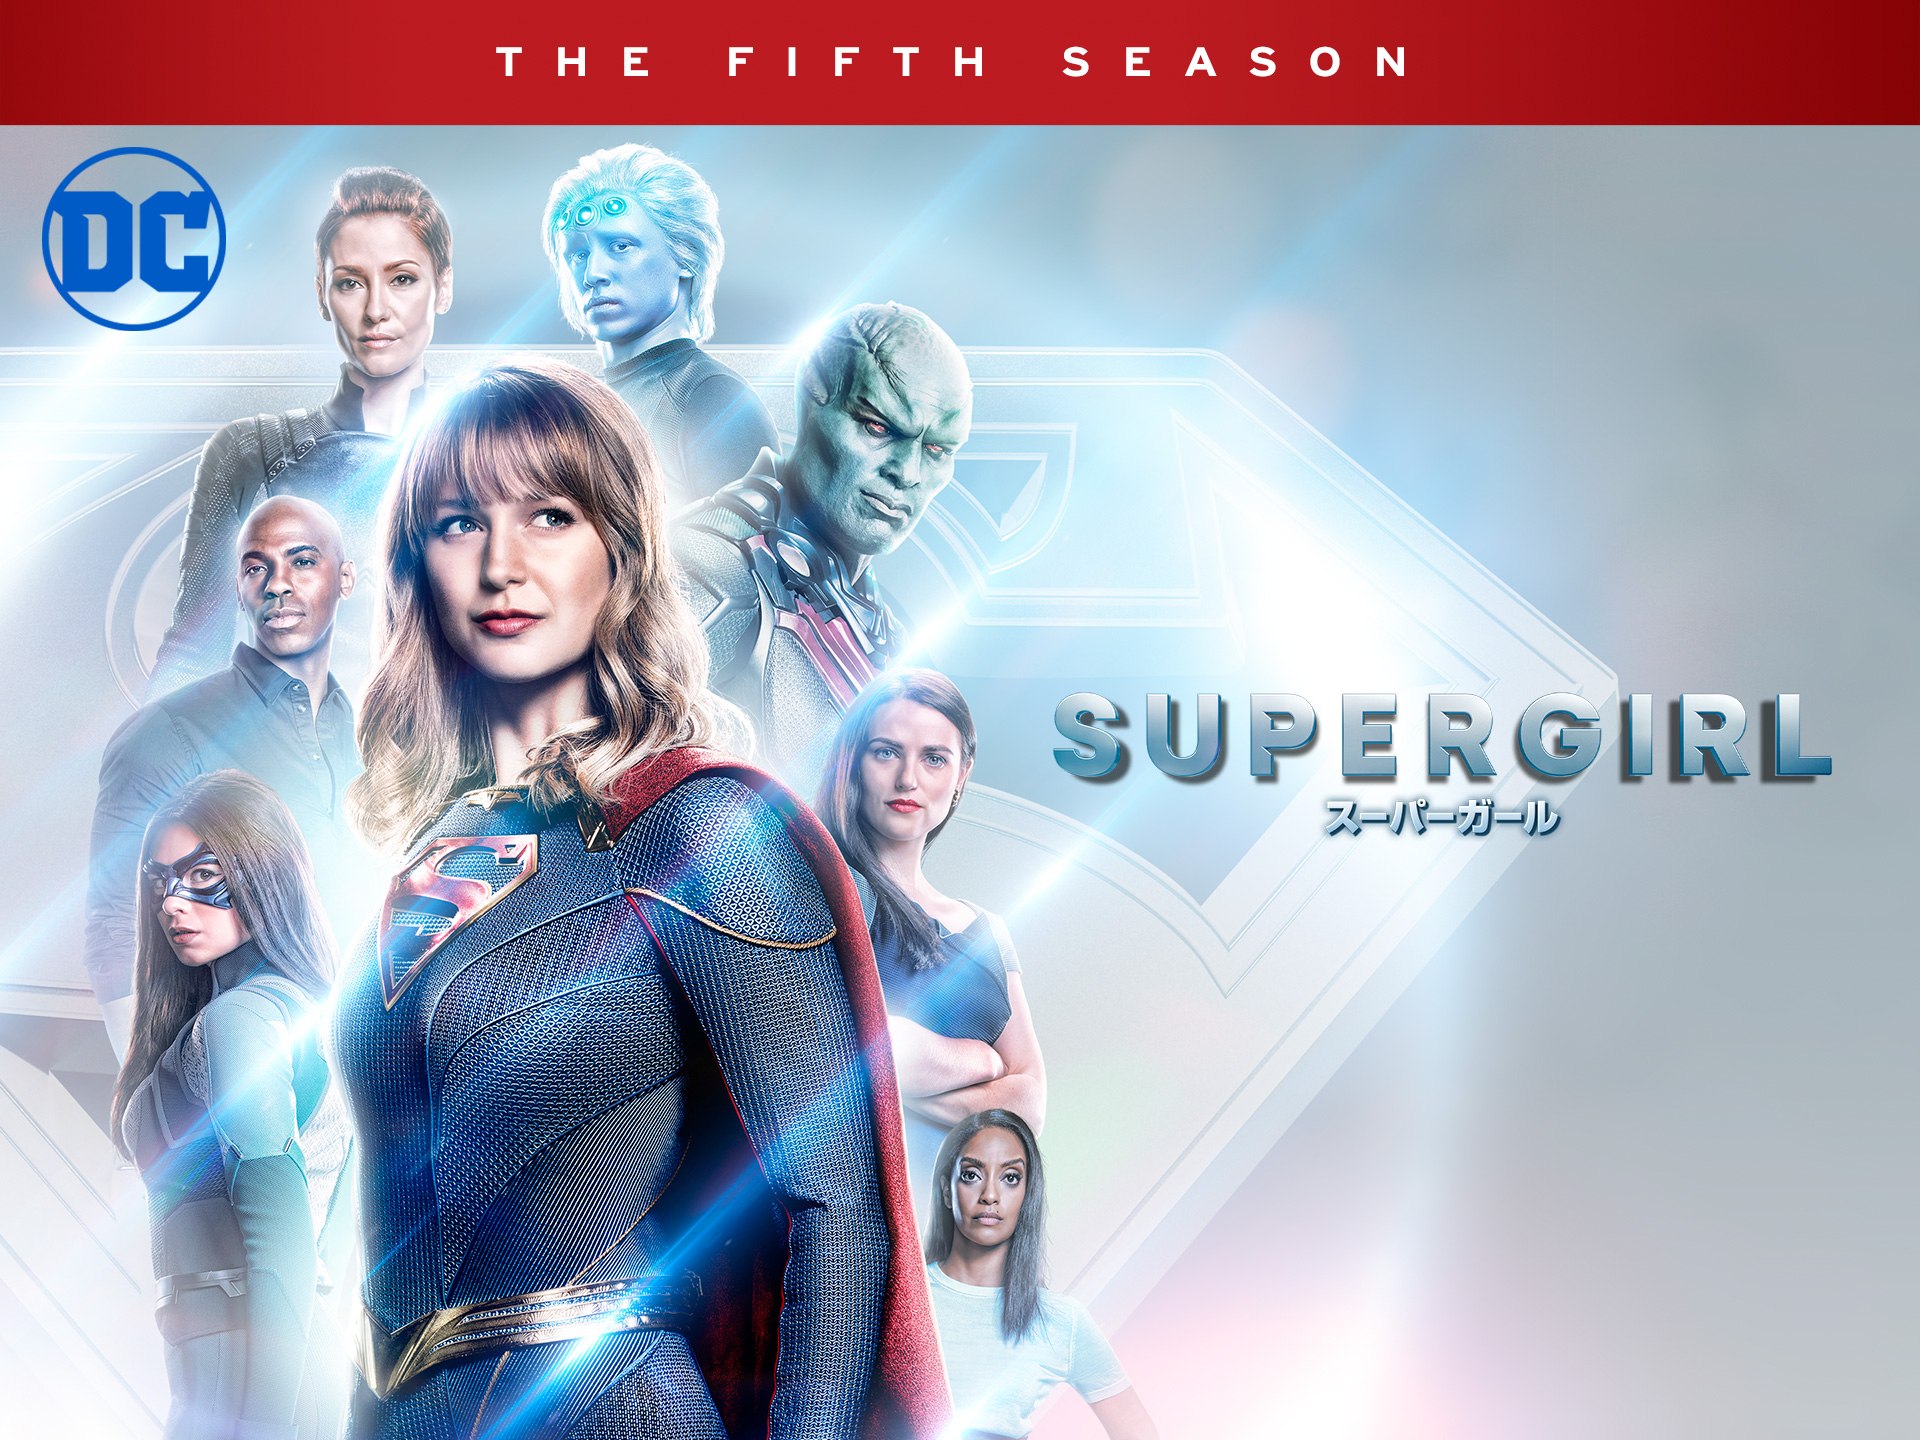 テレビドラマ Supergirl スーパーガール フィフス シーズン のストーリー一覧 初月無料 動画配信サービスのビデオマーケット